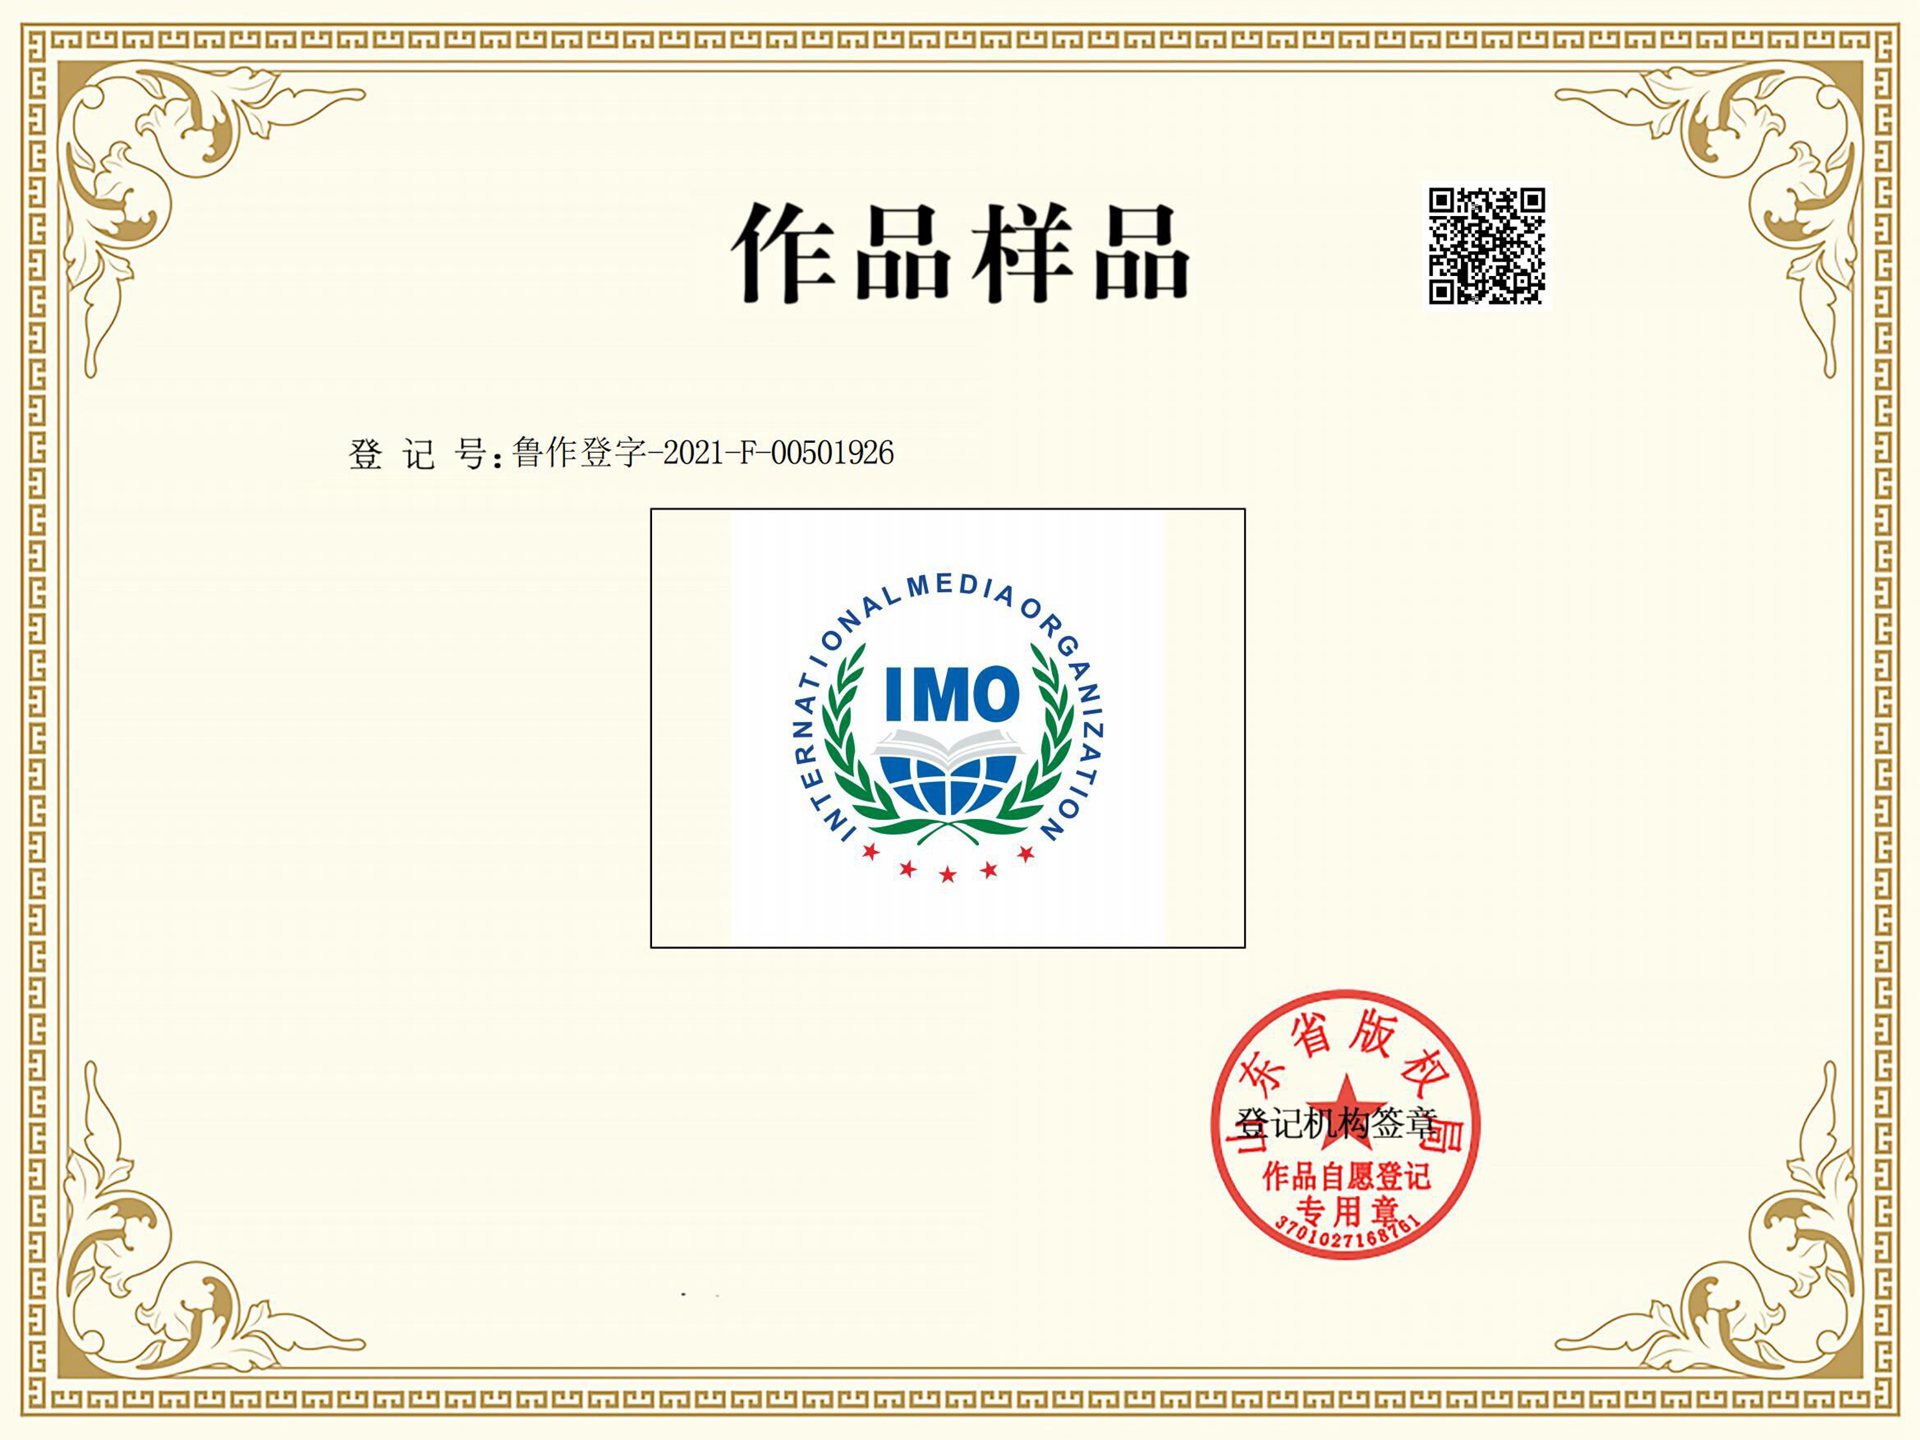 国际媒体组织（IMO）官方标识获得版权登记保护